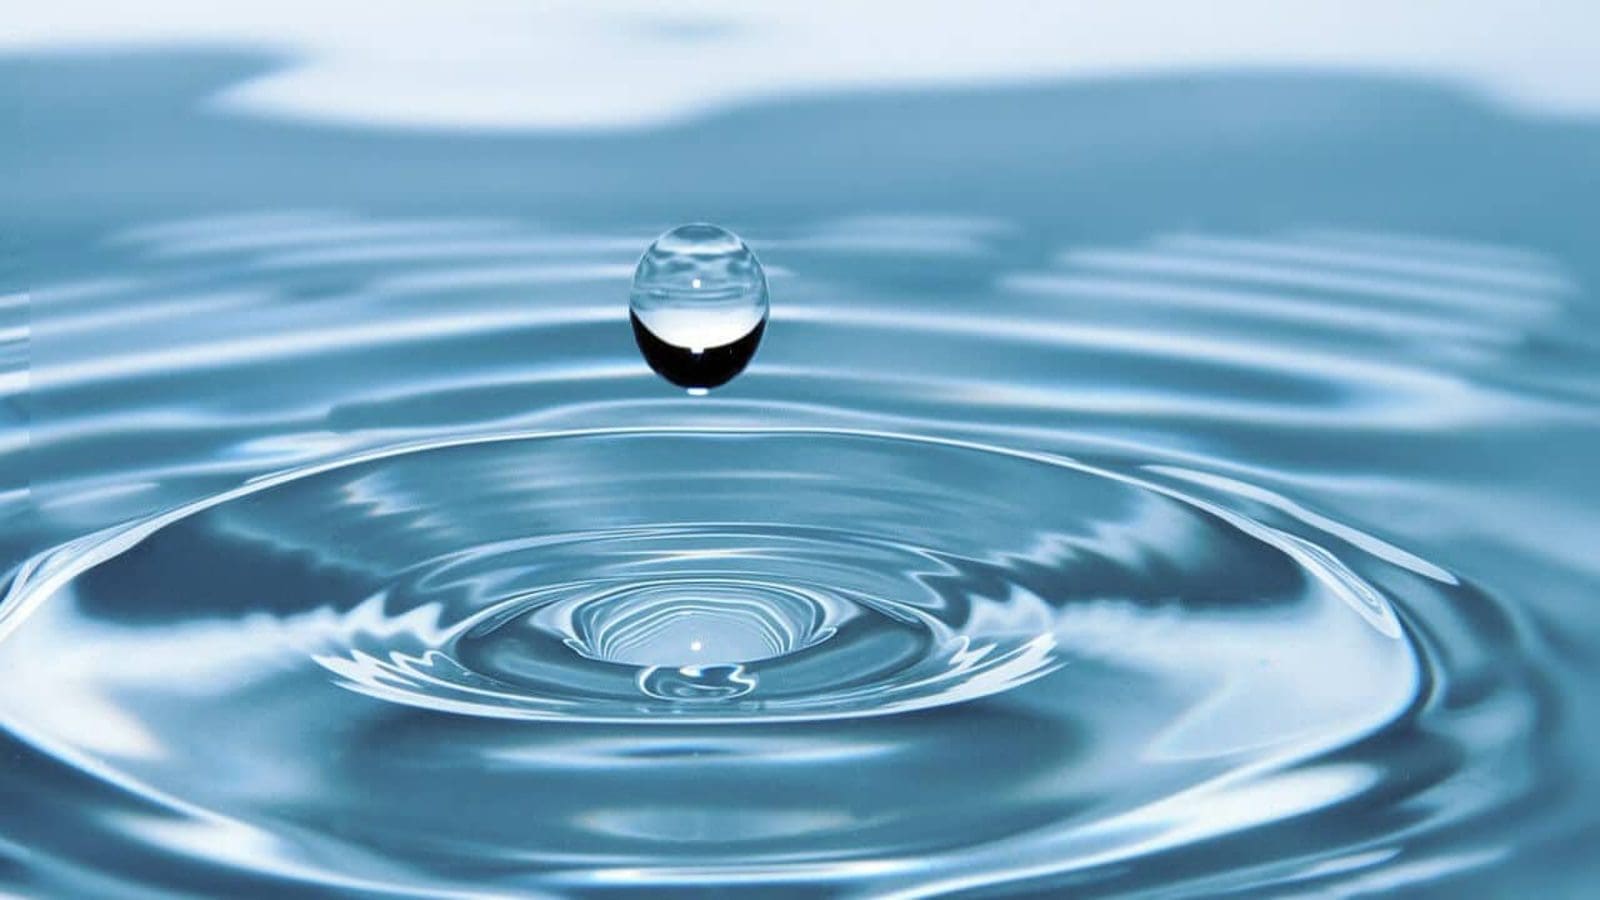 Constellation Brands invests US$0.7m in water stewardship program